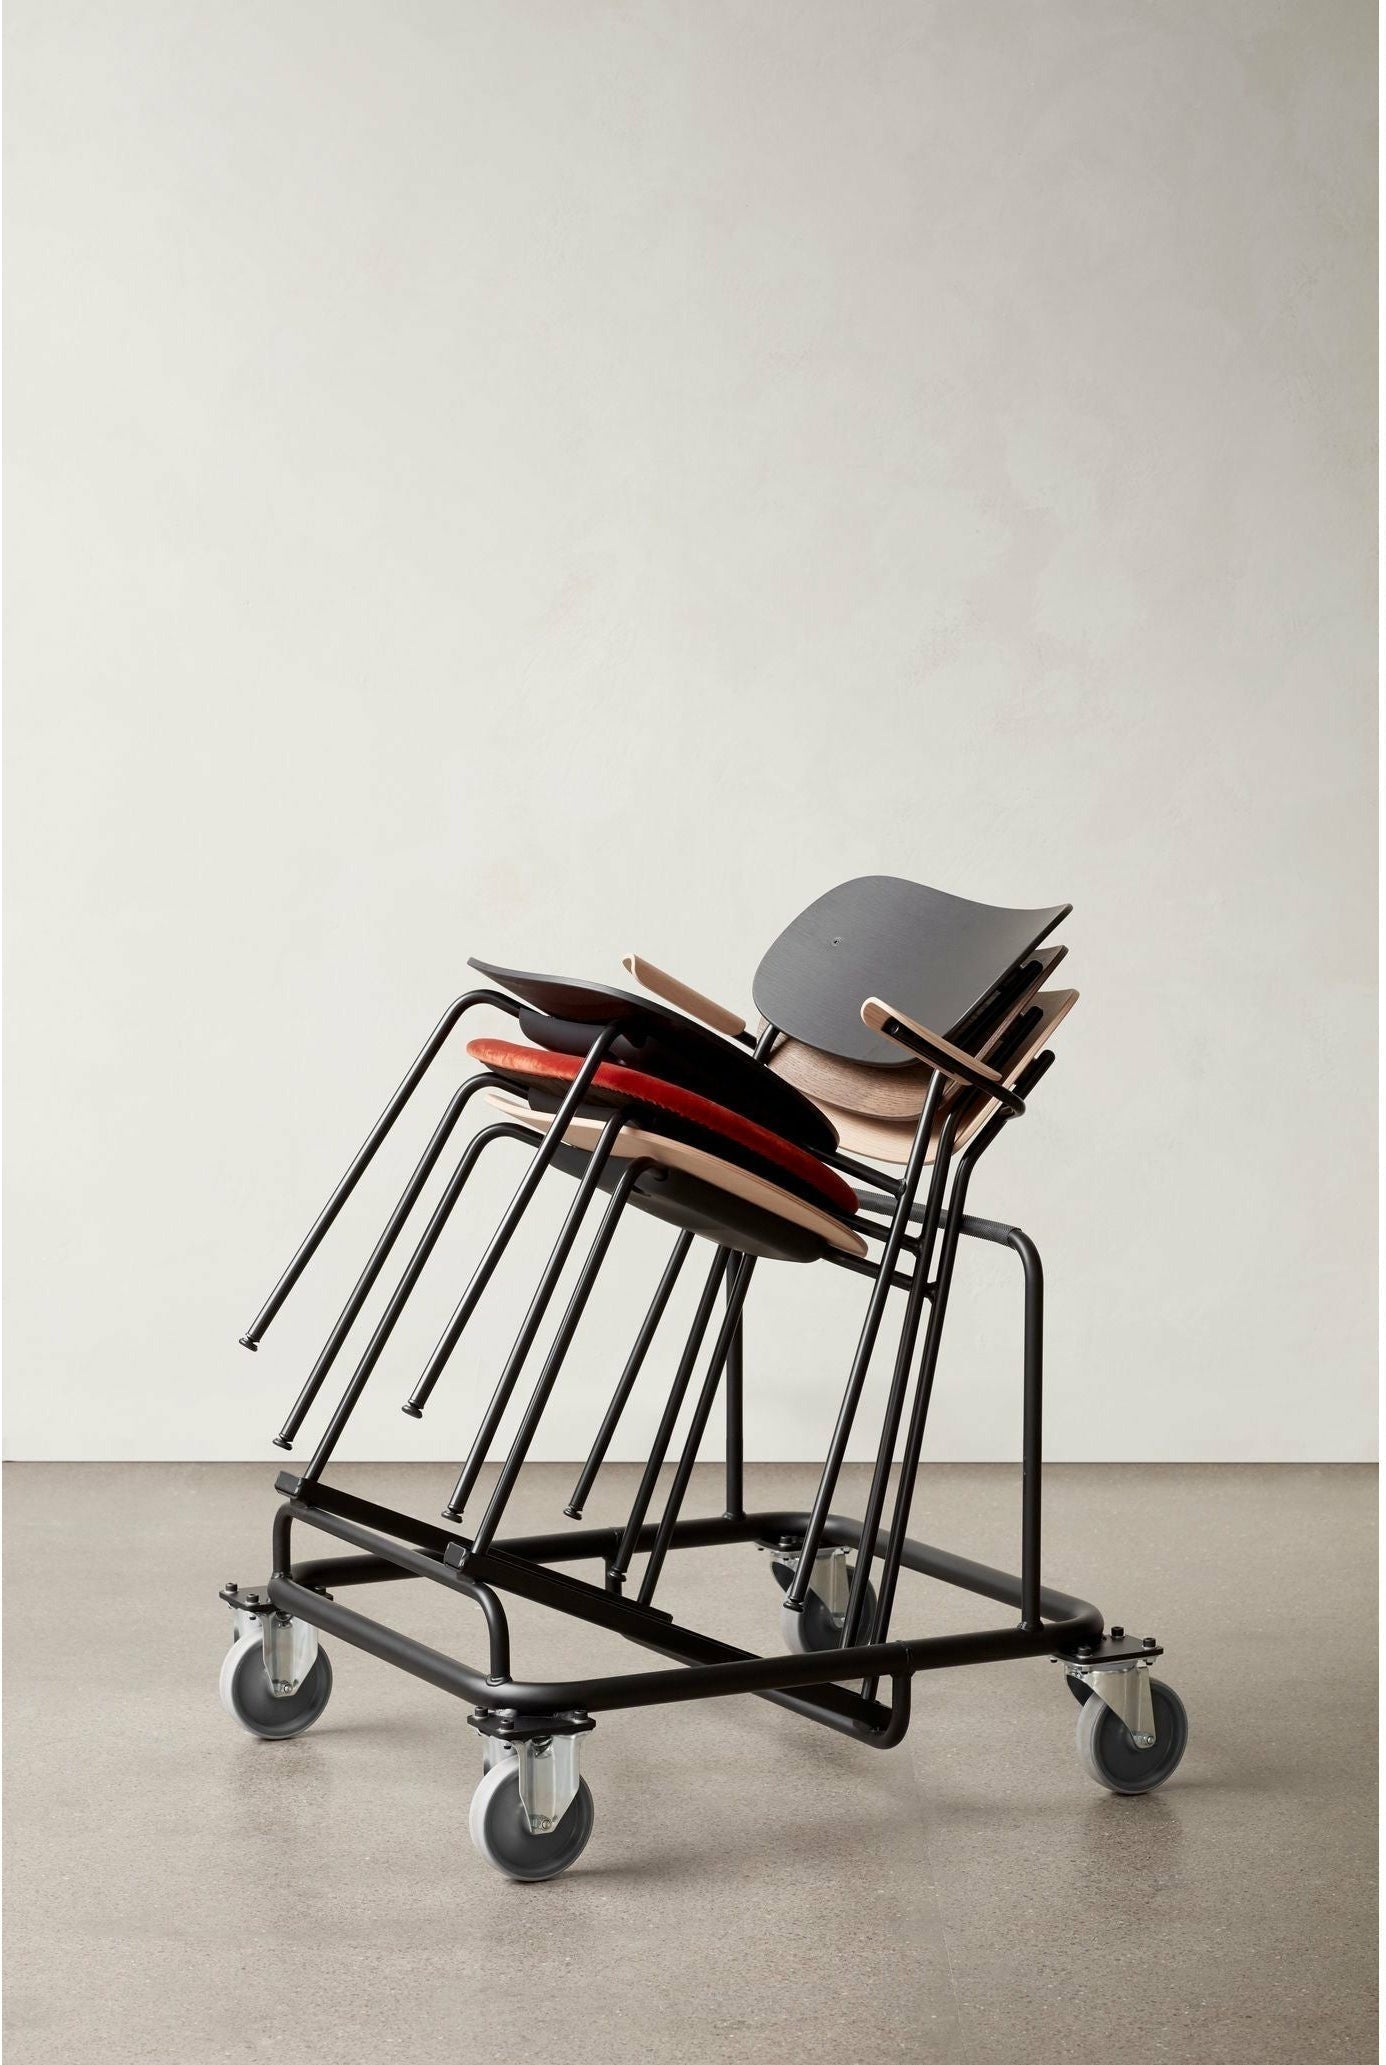 Audo Copenhagen Co Food Chair Upholstered Seat Black Oak, Chrome/Dakar 0842